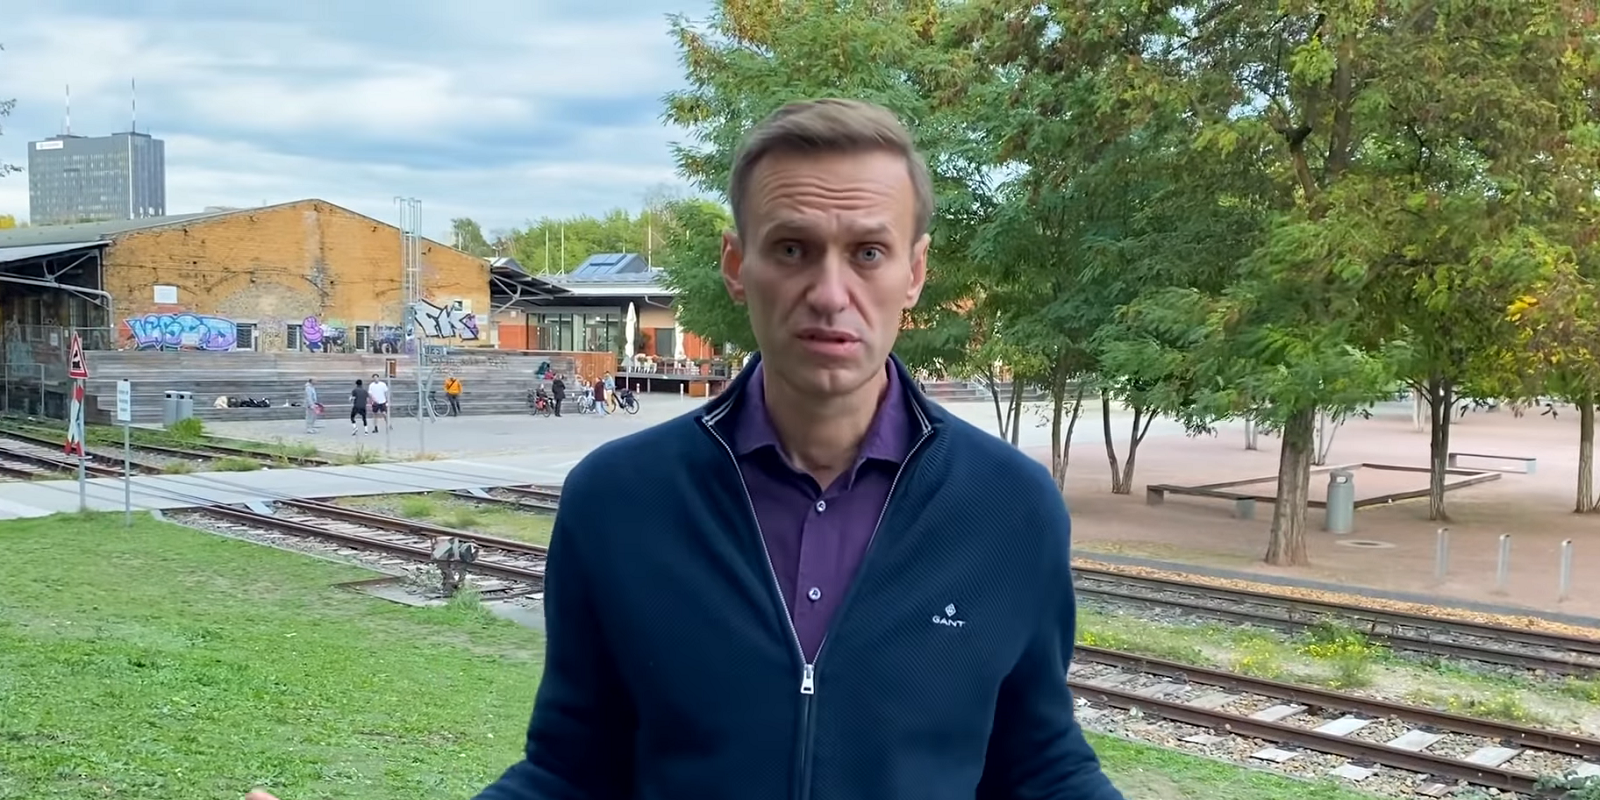 Россия вводит ответные санкции по Навальному